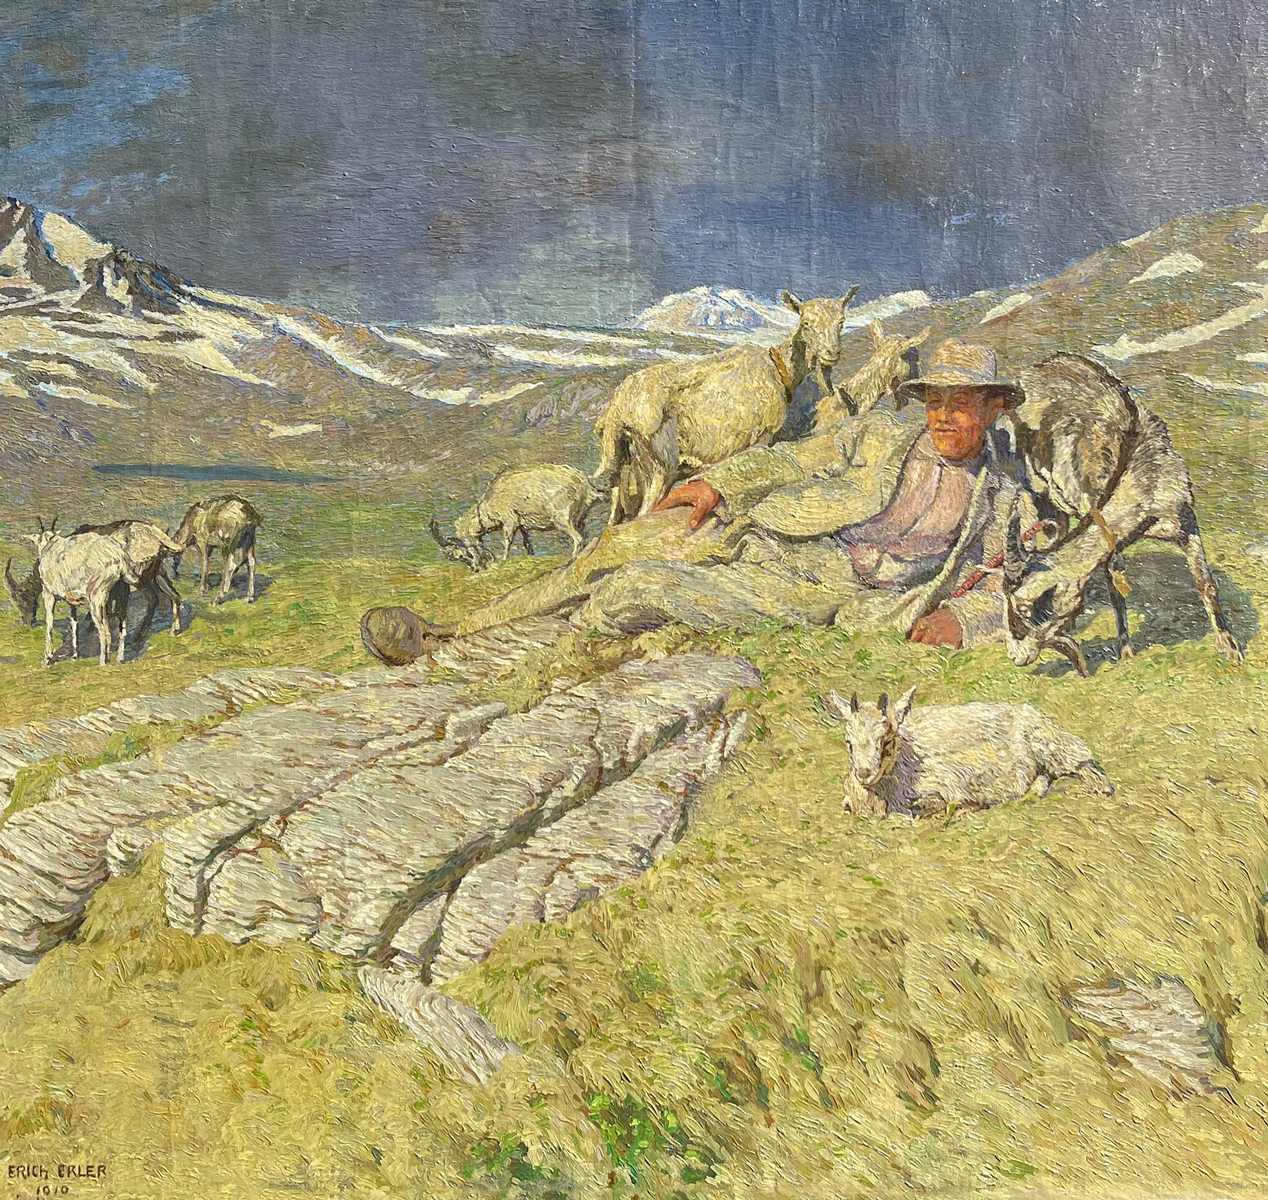 ERLER, Erich, (Austrian, b. 1894): Mountain